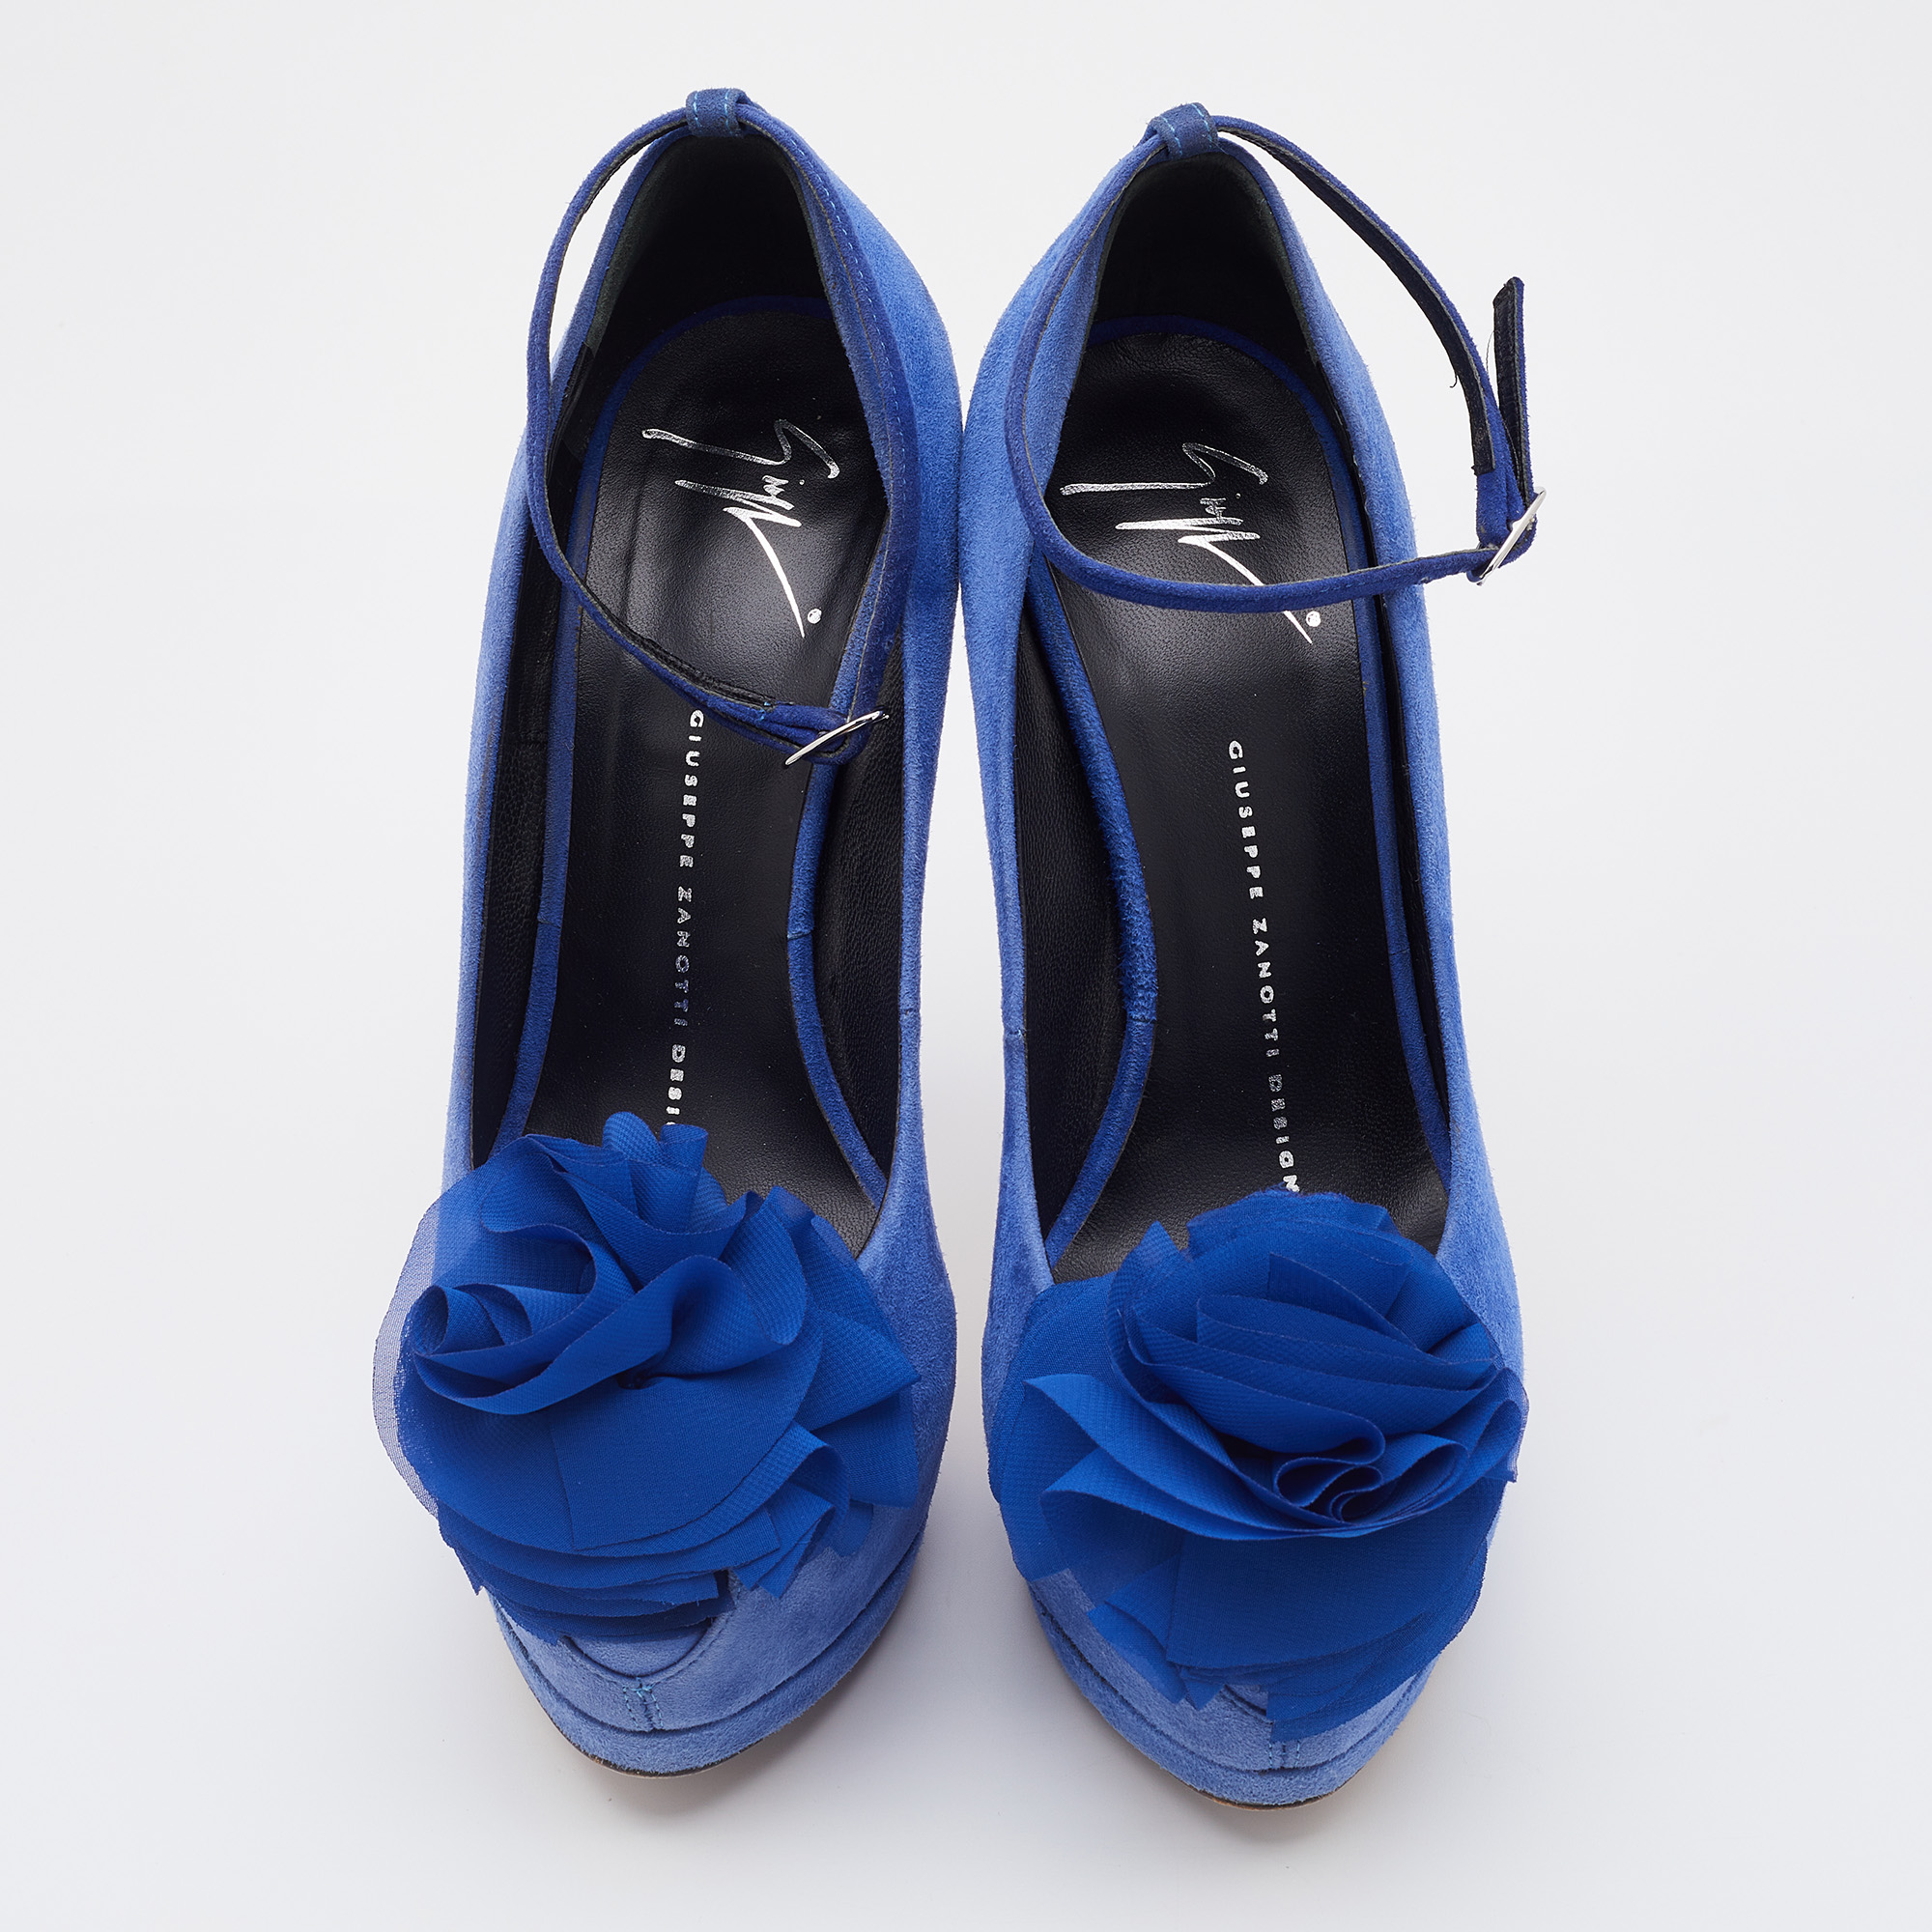 Giuseppe Zanotti Blue Suede Flower Applique Peep Toe Platform Ankle Strap Pumps Size 37